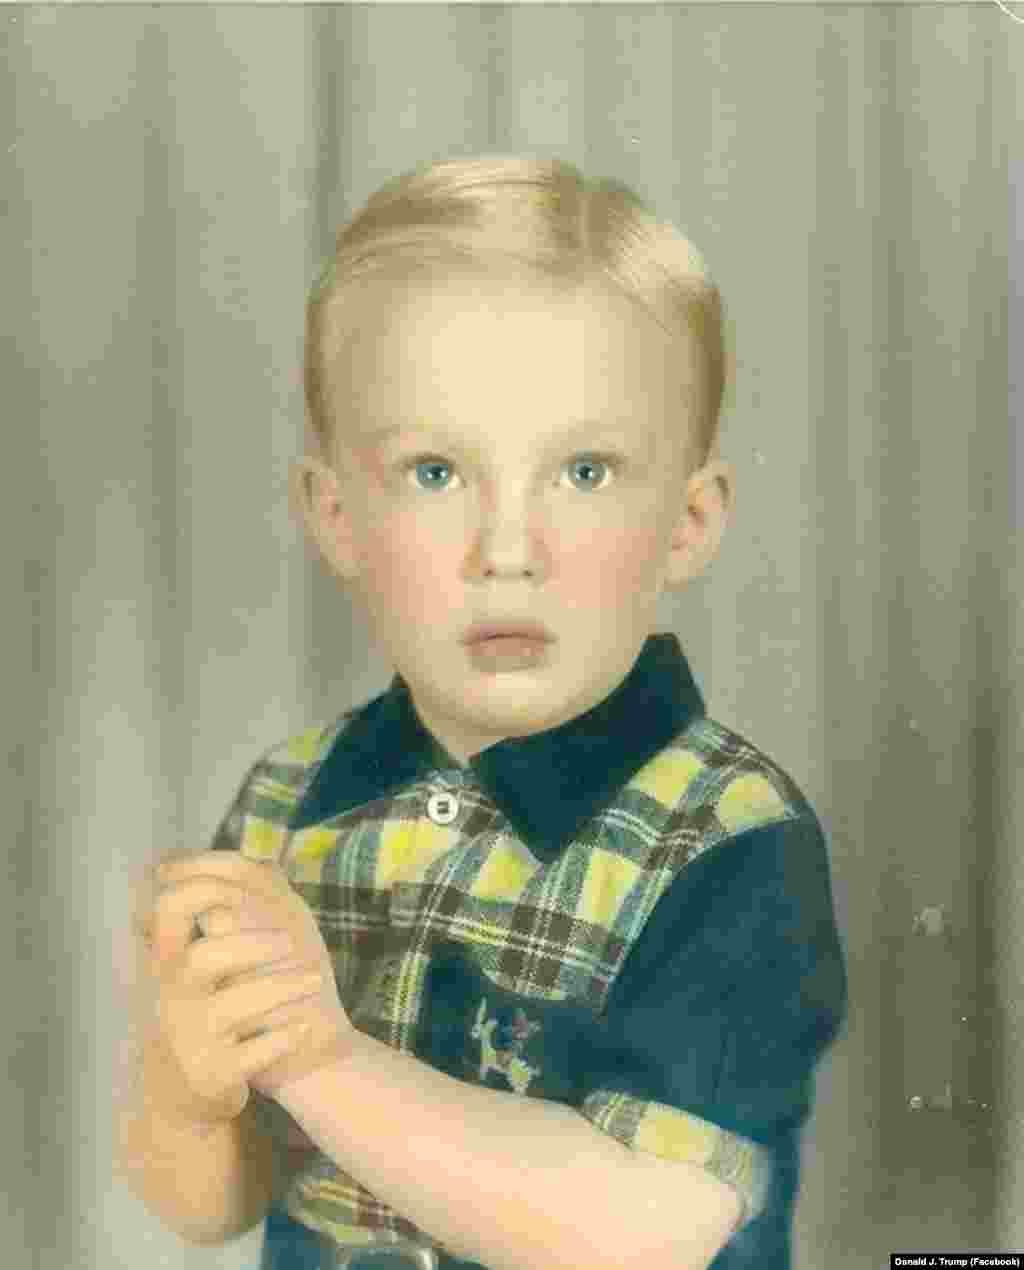 Дональд Трамп. Дата фотографии неизвестна. Он родился в богатой семье в Нью-Йорке в 1946 году.